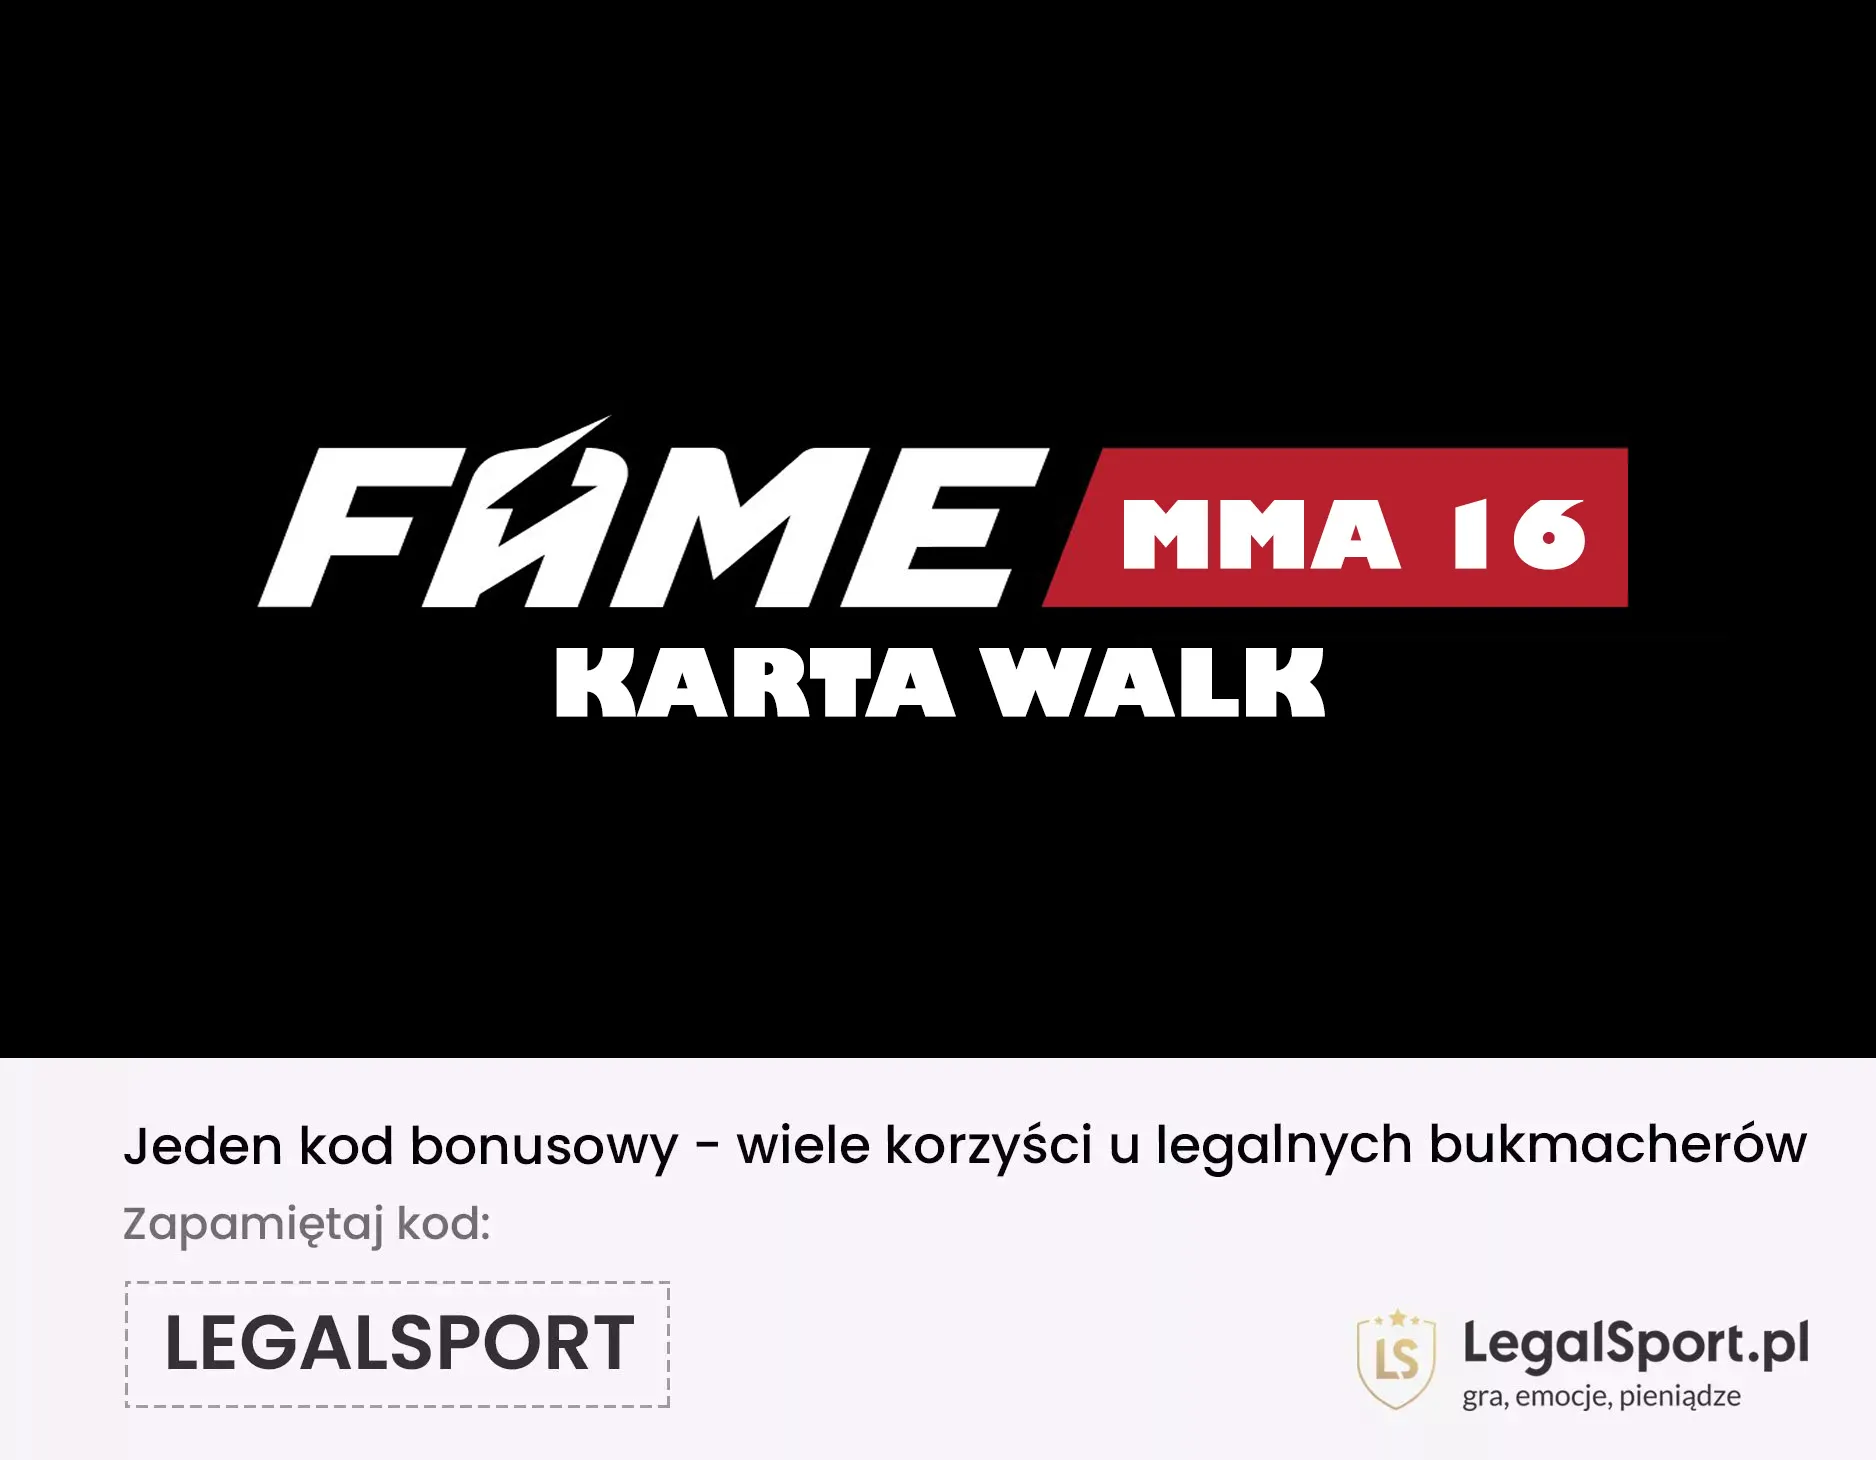 FAME MMA 16: karta walk